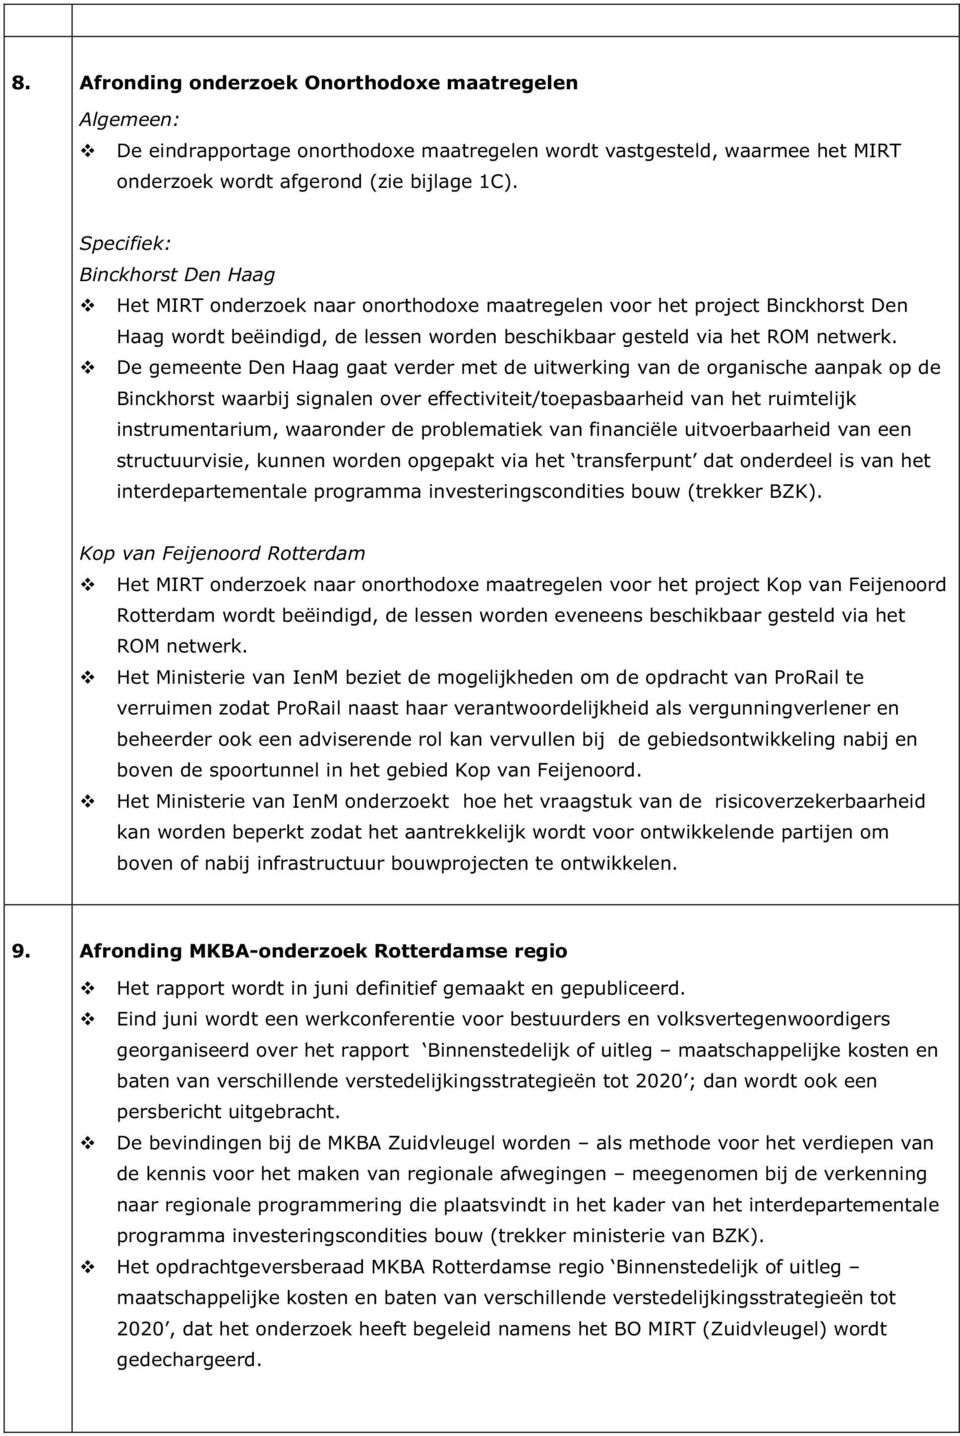 De gemeente Den Haag gaat verder met de uitwerking van de organische aanpak op de Binckhorst waarbij signalen over effectiviteit/toepasbaarheid van het ruimtelijk instrumentarium, waaronder de